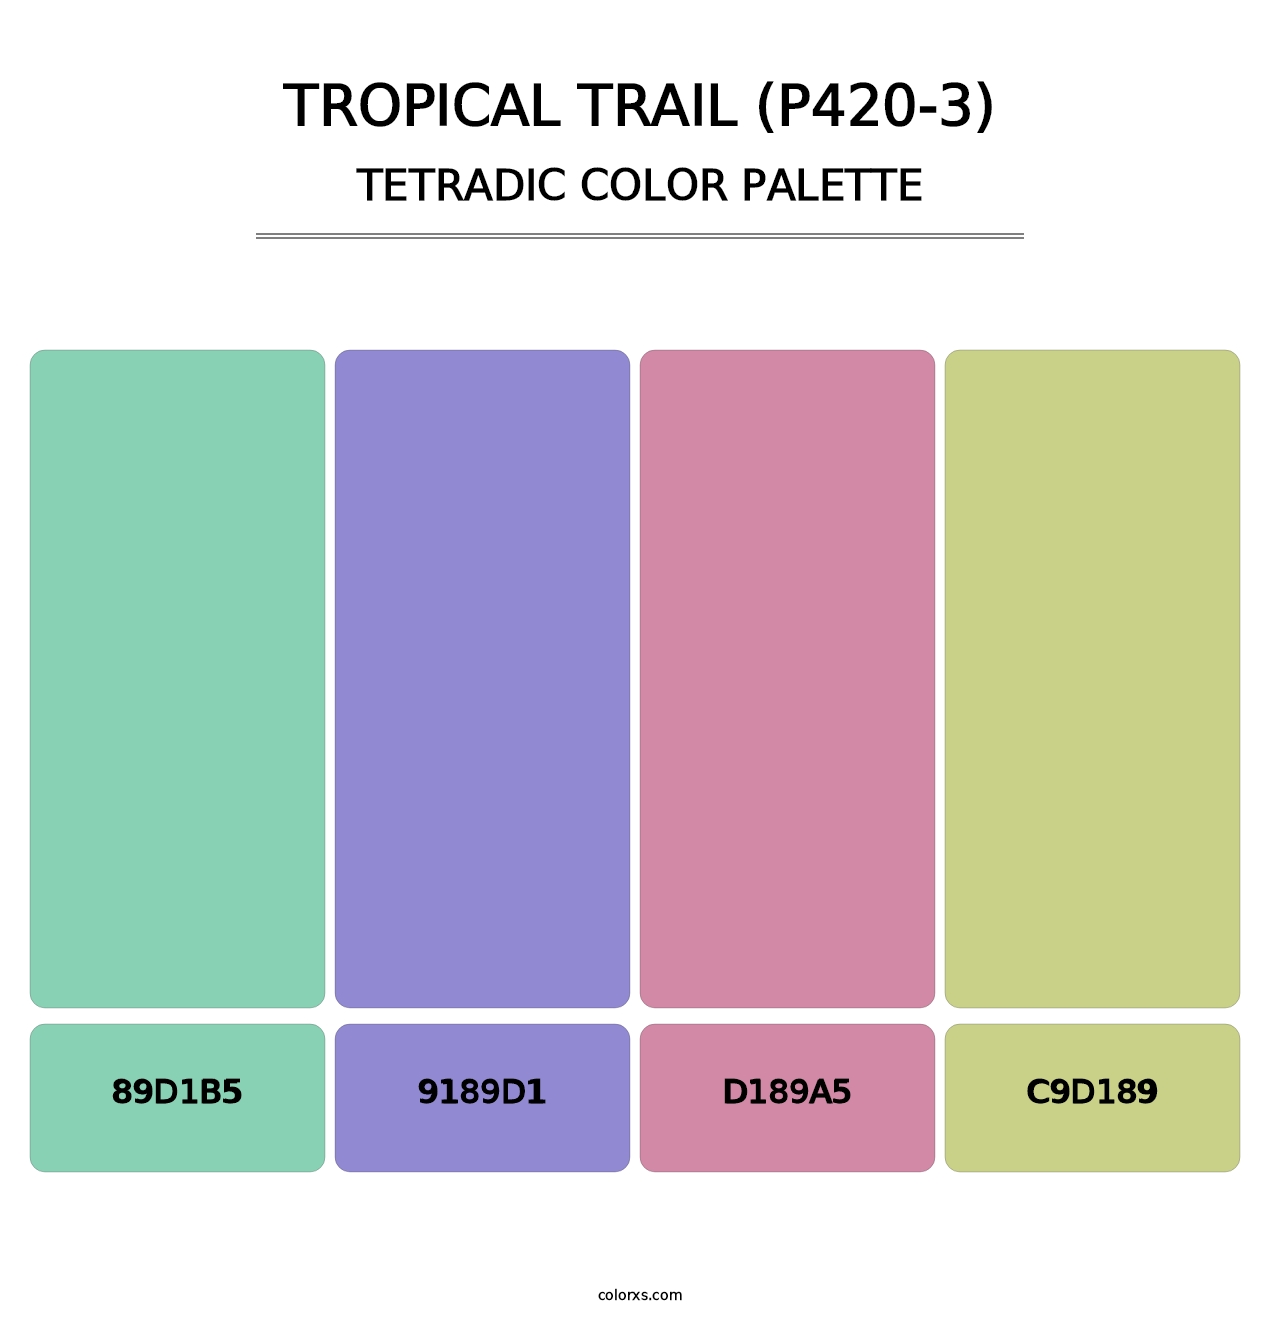 Tropical Trail (P420-3) - Tetradic Color Palette